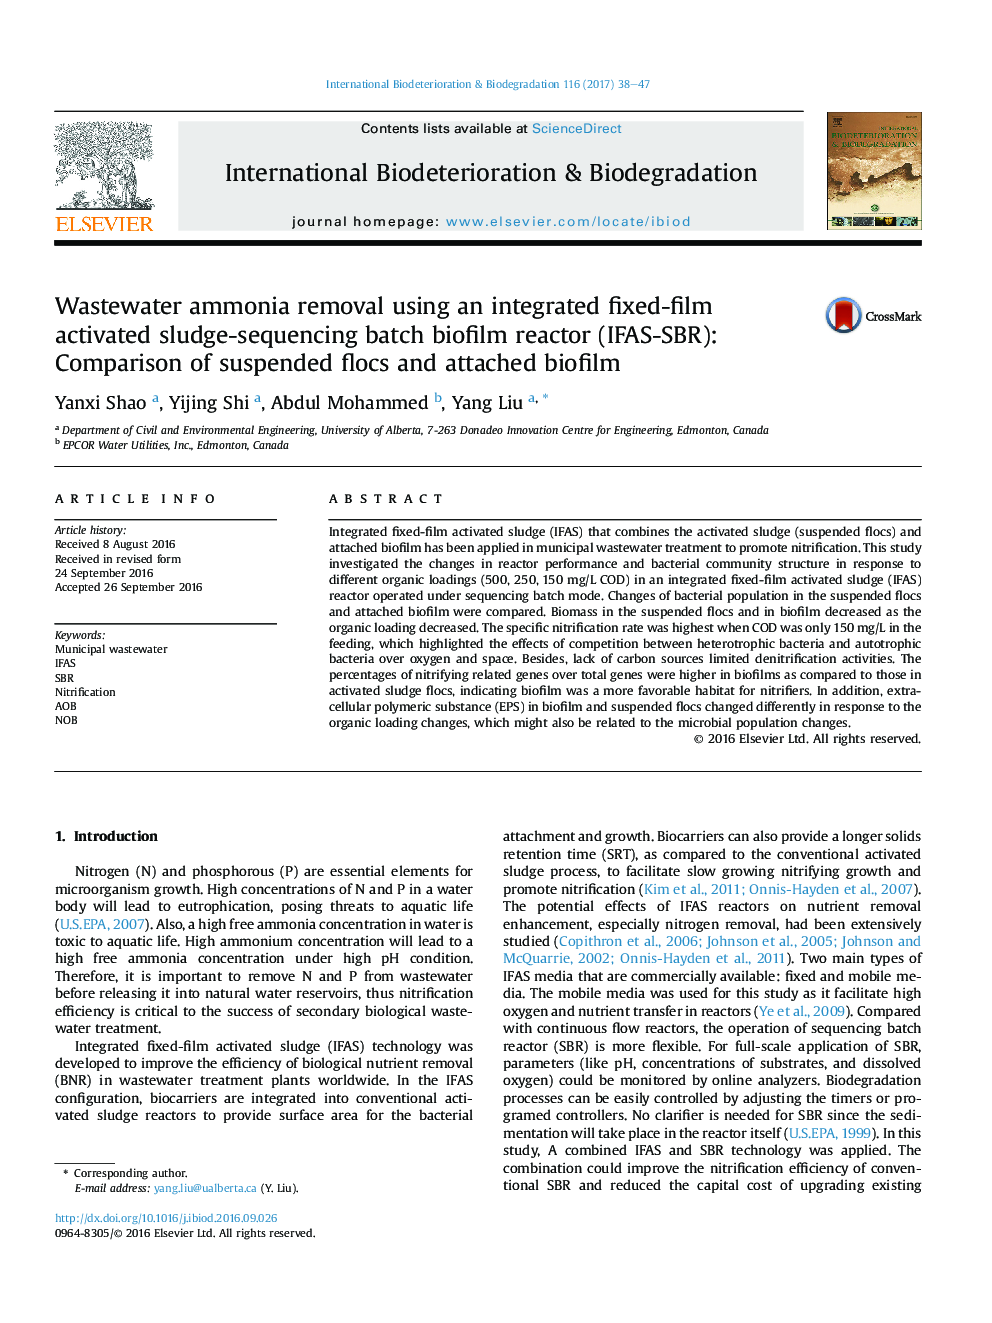 حذف آمونیاک فاضلاب با استفاده از یکپارچه ثابت فیلم لجن فعال-ناپیوسته متوالی بیوفیلم راکتور (IFAS-SBR): مقایسه لخته معلق و بیوفیلم متصل